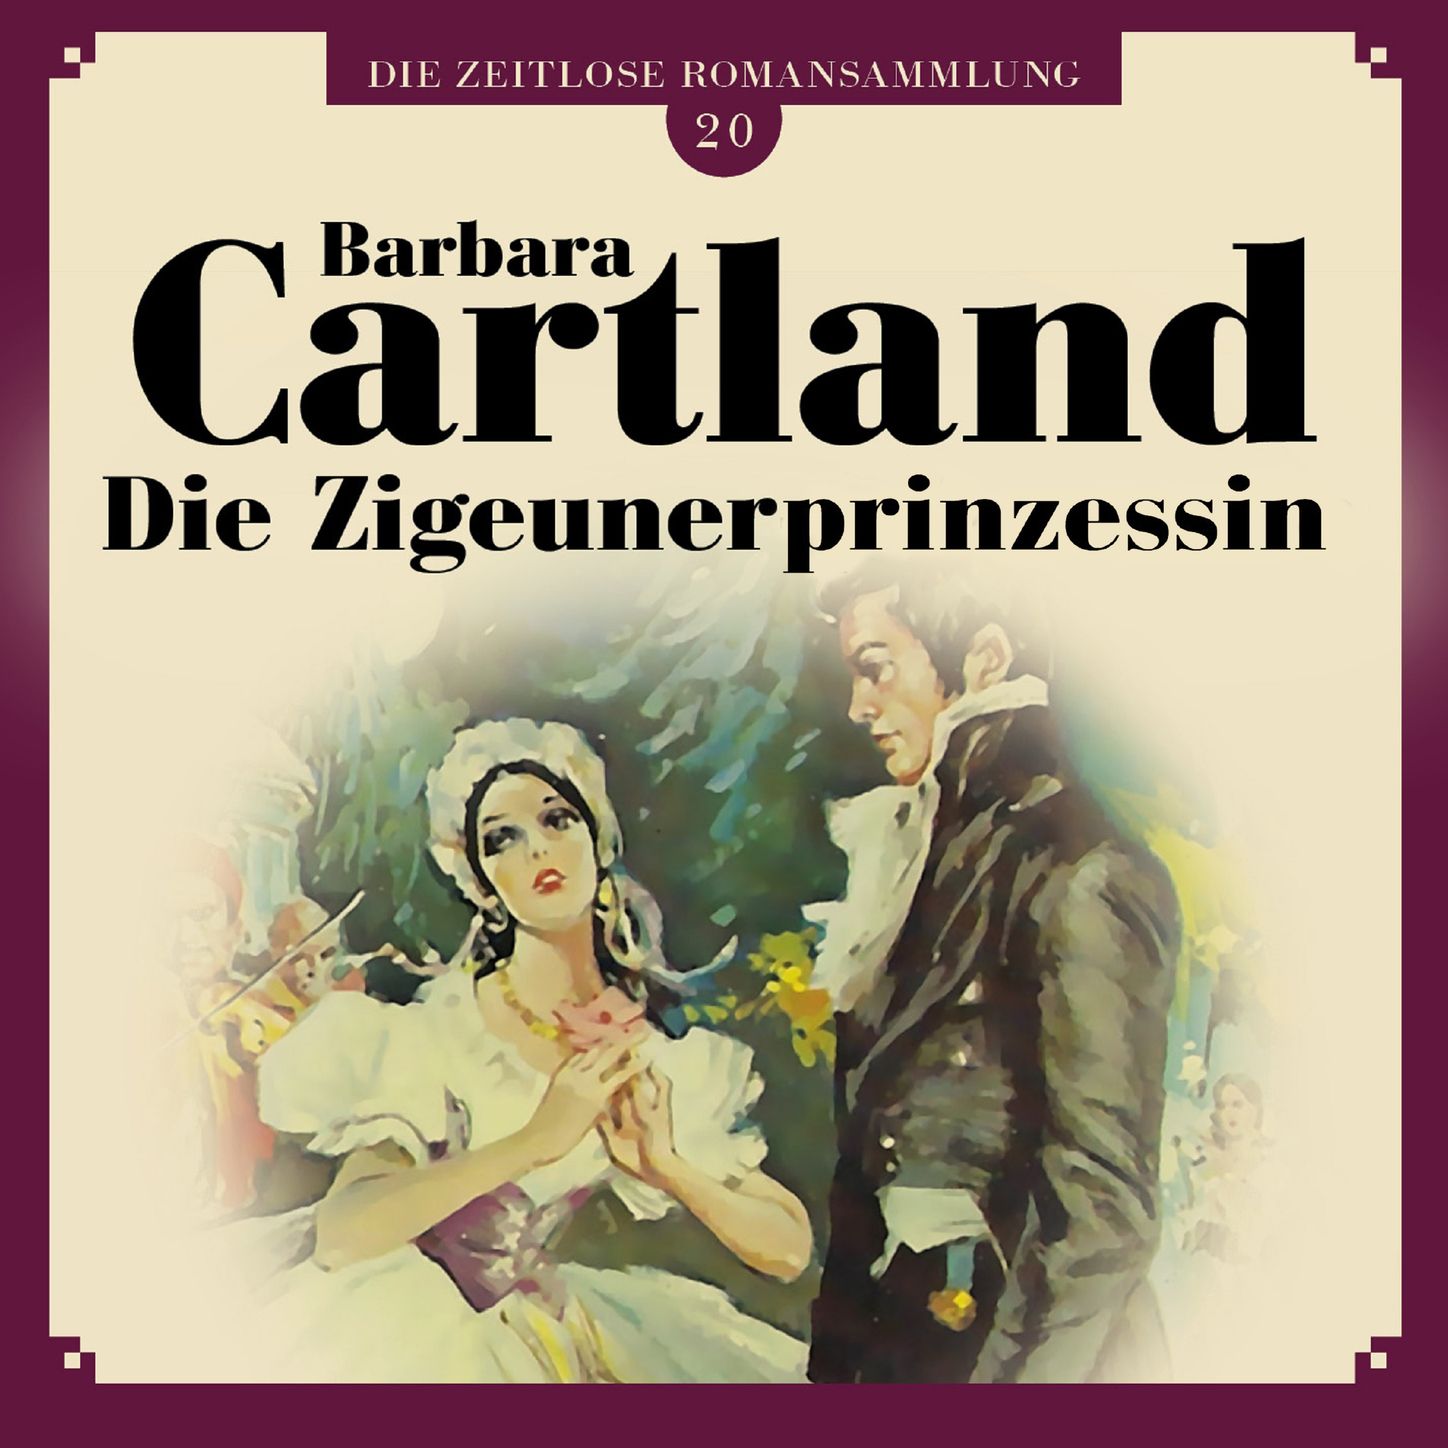 Die Zigeunerprinzessin - Die zeitlose Romansammlung von Barbara Cartland 20, Kapitel 20